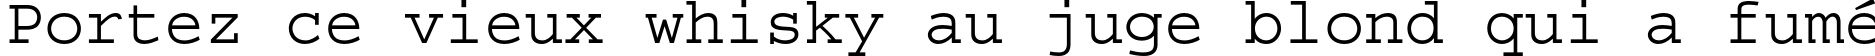 Пример написания шрифтом Courier Std Medium текста на французском